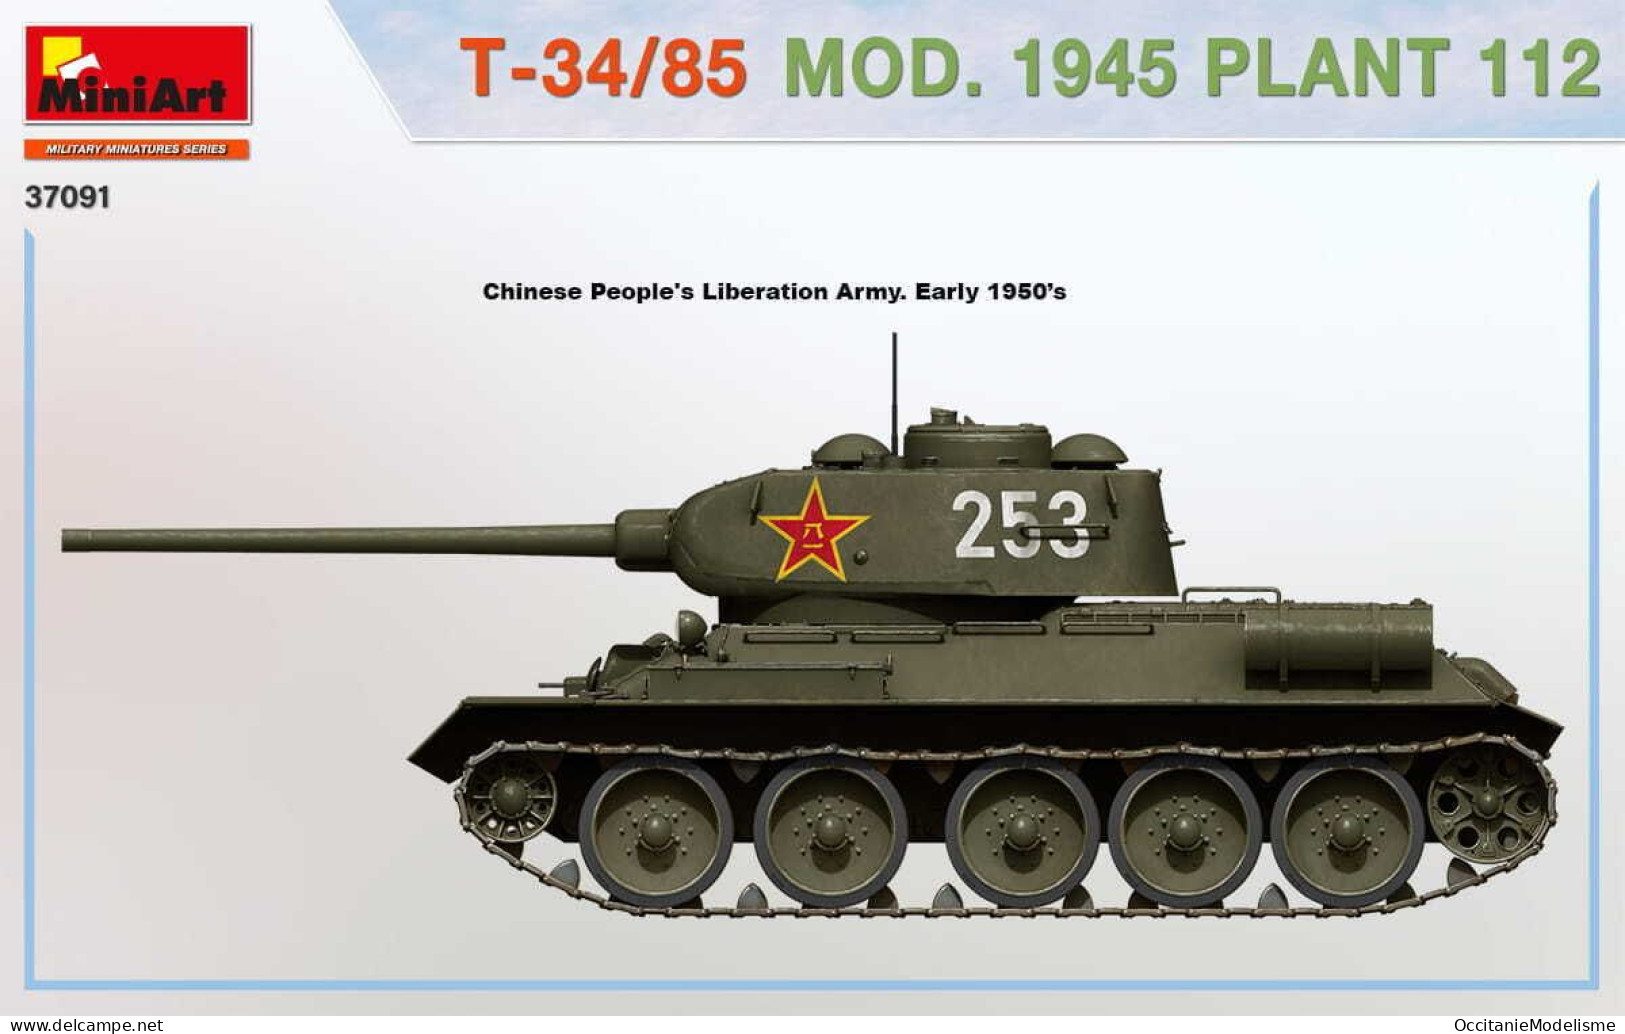 Miniart - CHAR T-34/85 Mod. 1945 Plant 112 maquette kit plastique réf. 37091 Neuf NBO 1/35